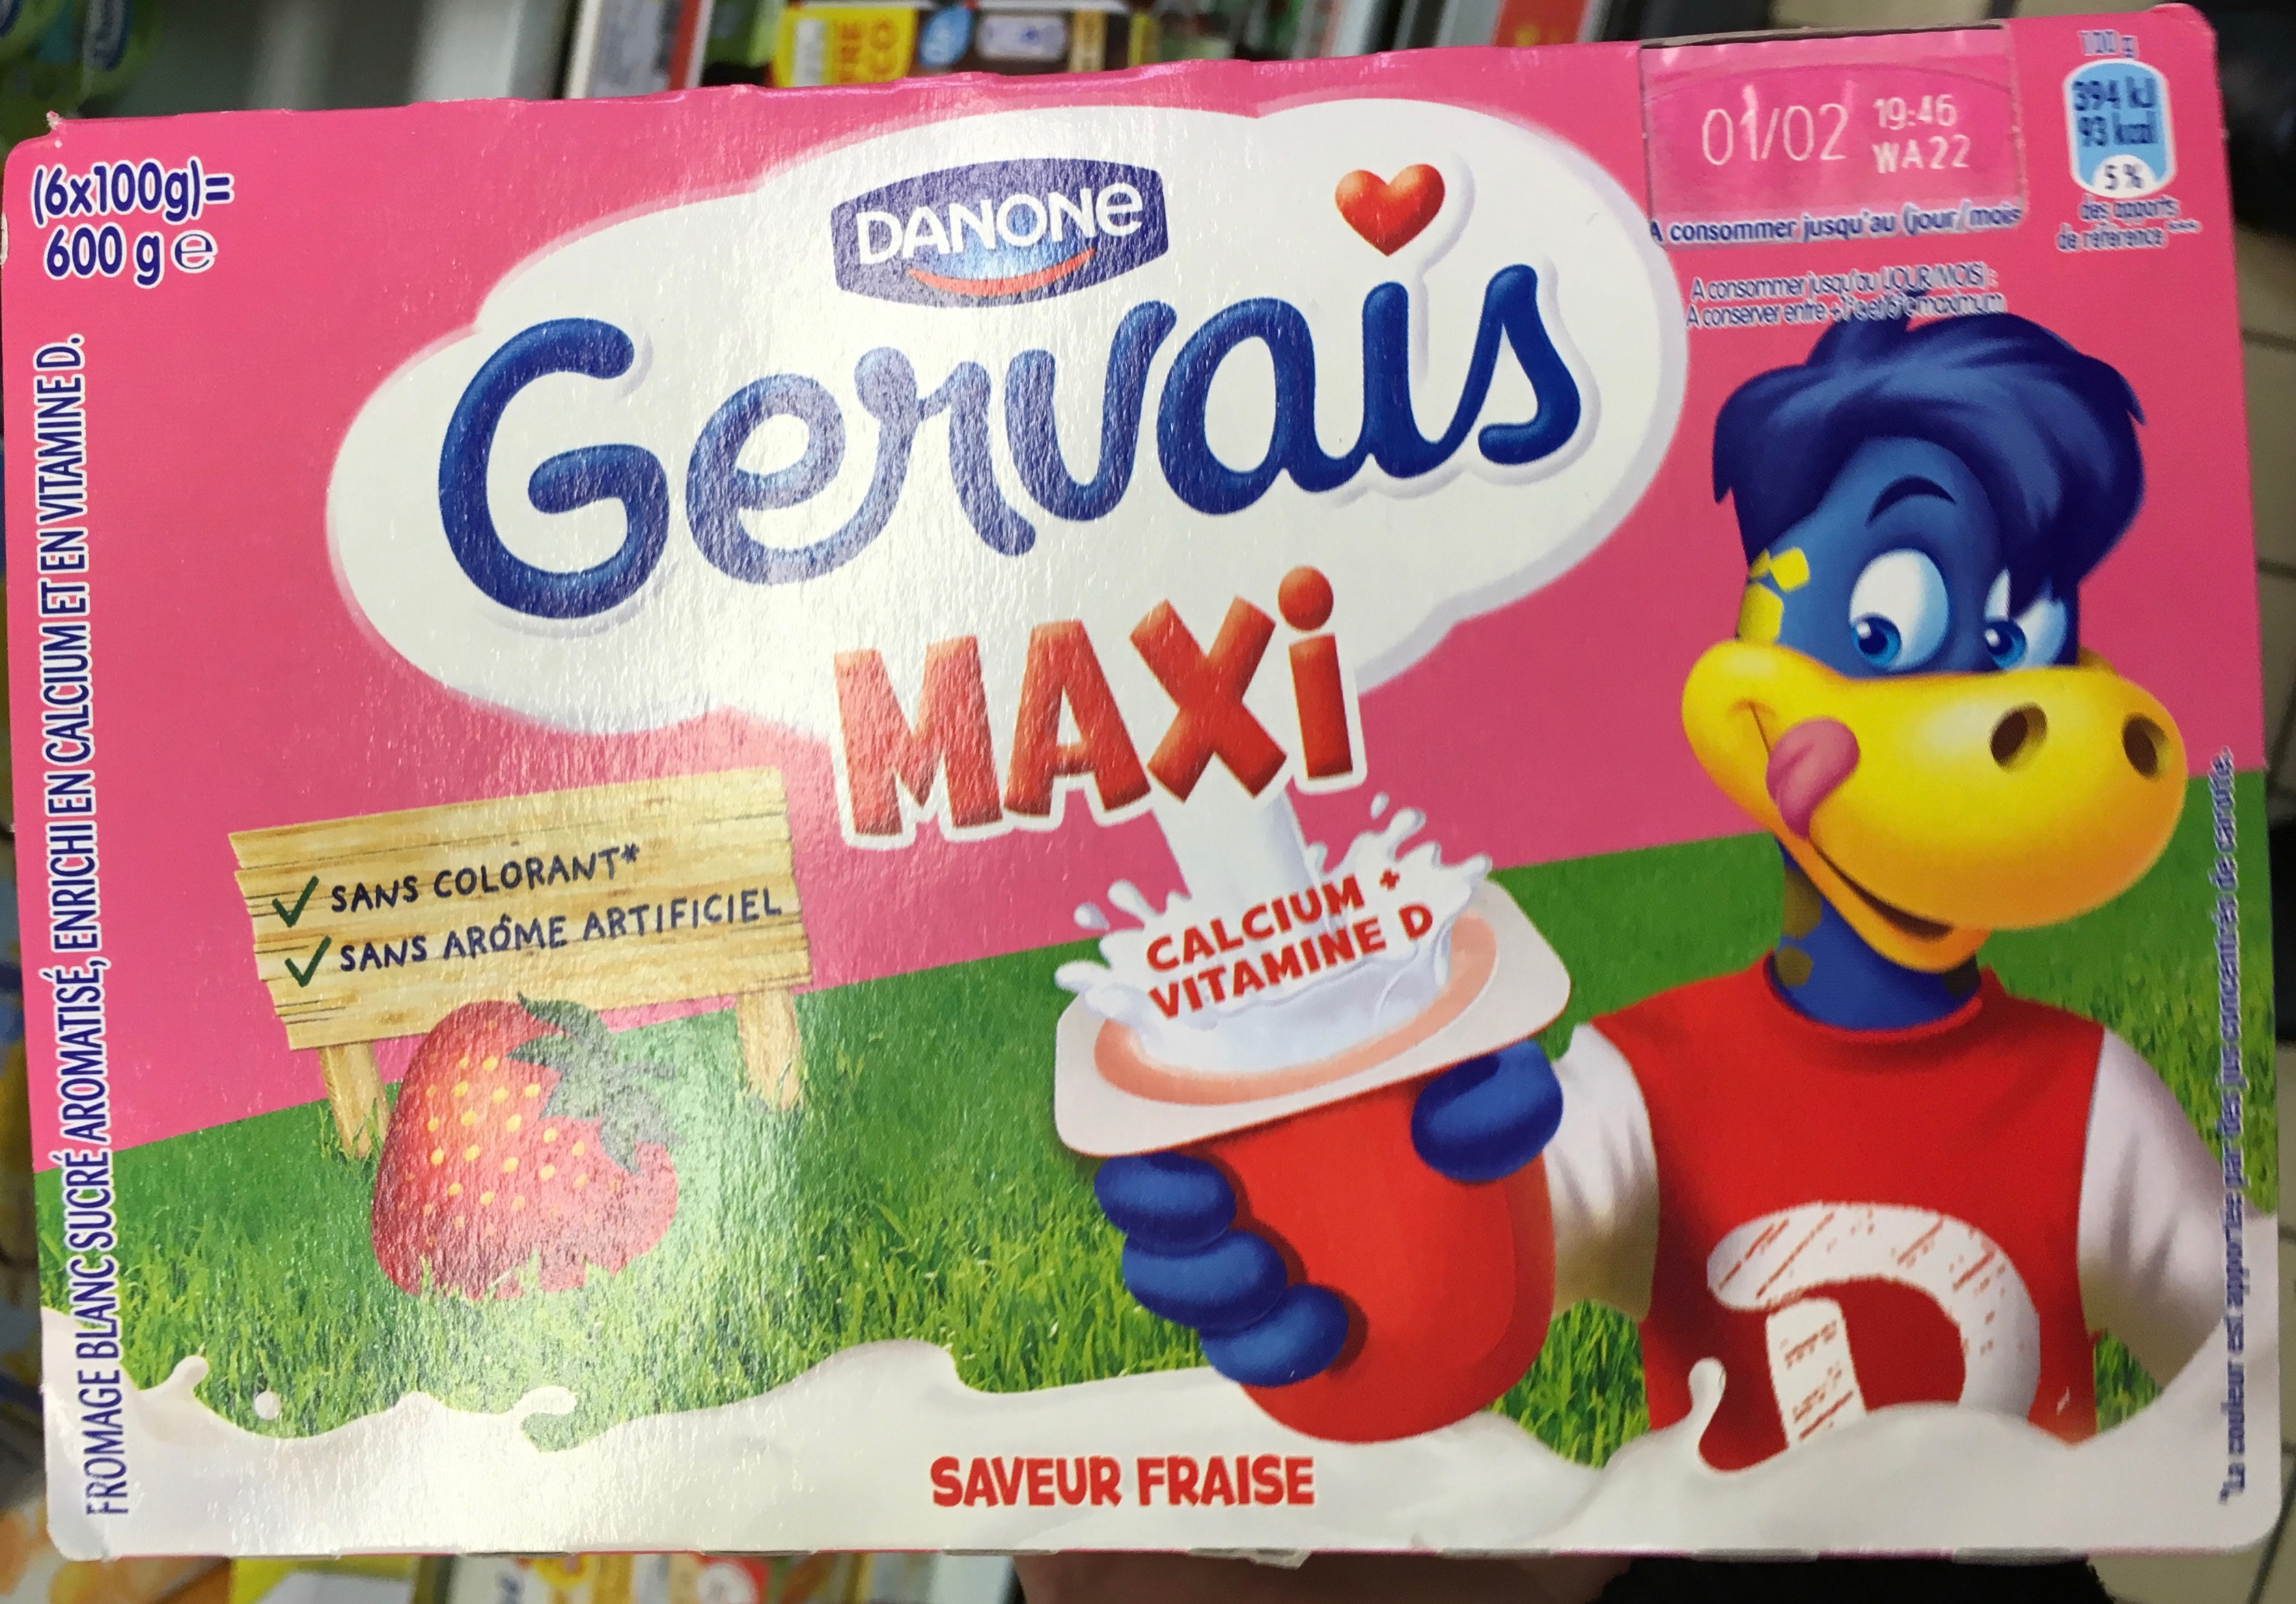 Gervais Maxi saveur Fraise - Prodotto - fr